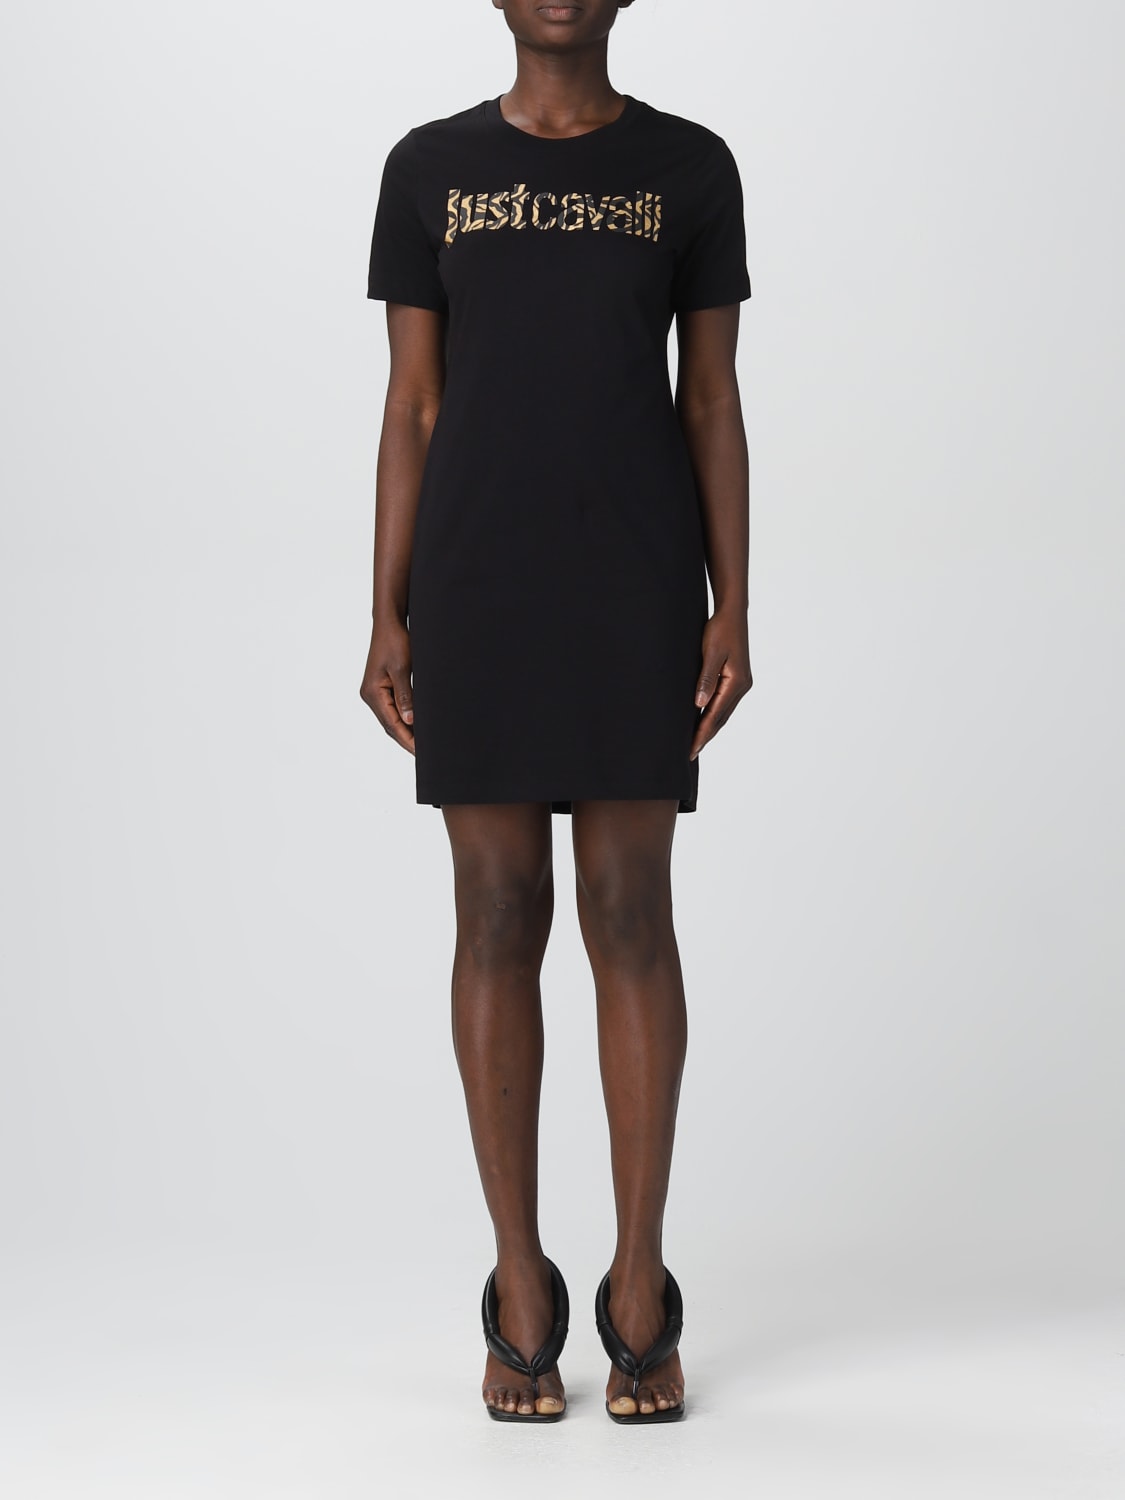 Kleid Just Cavalli: Just Cavalli Damen Kleid schwarz 2